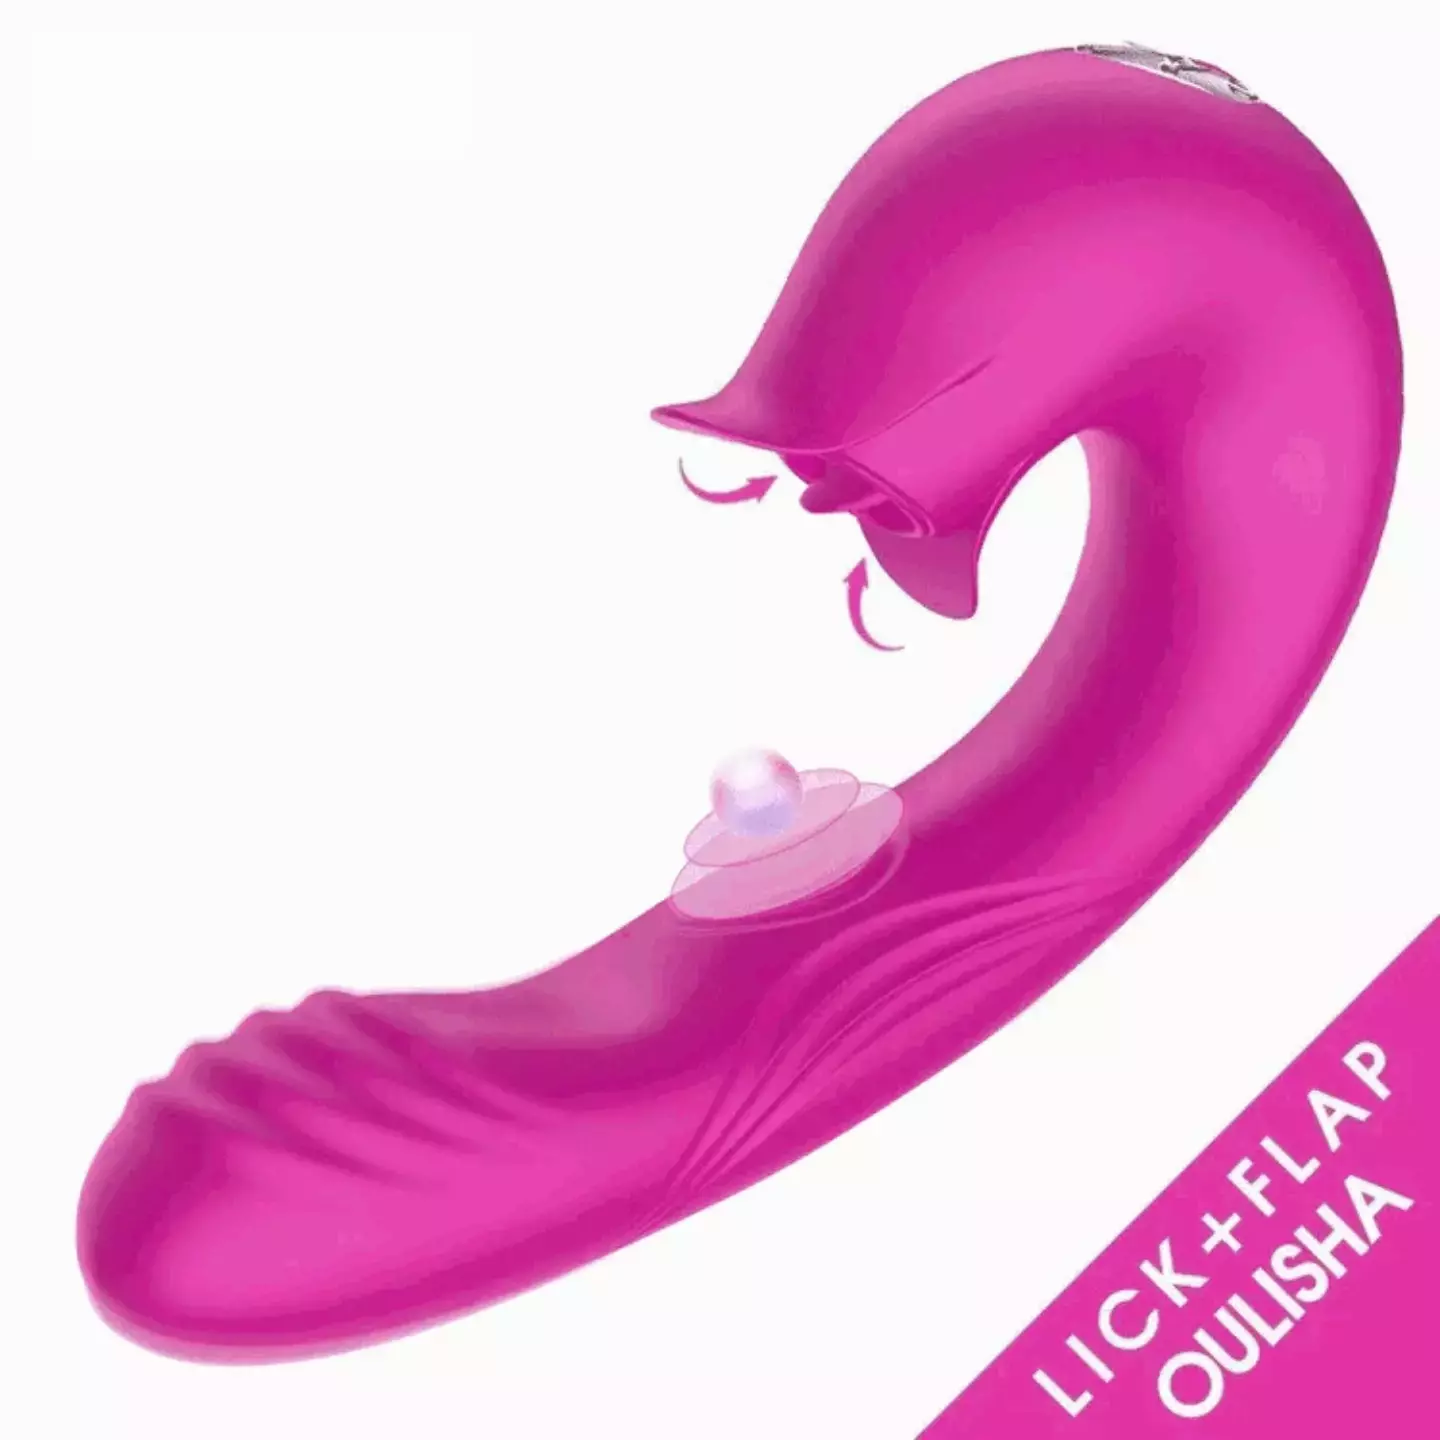 Devil Flower Sex Toys Sucking Dildo Vibrator For Women